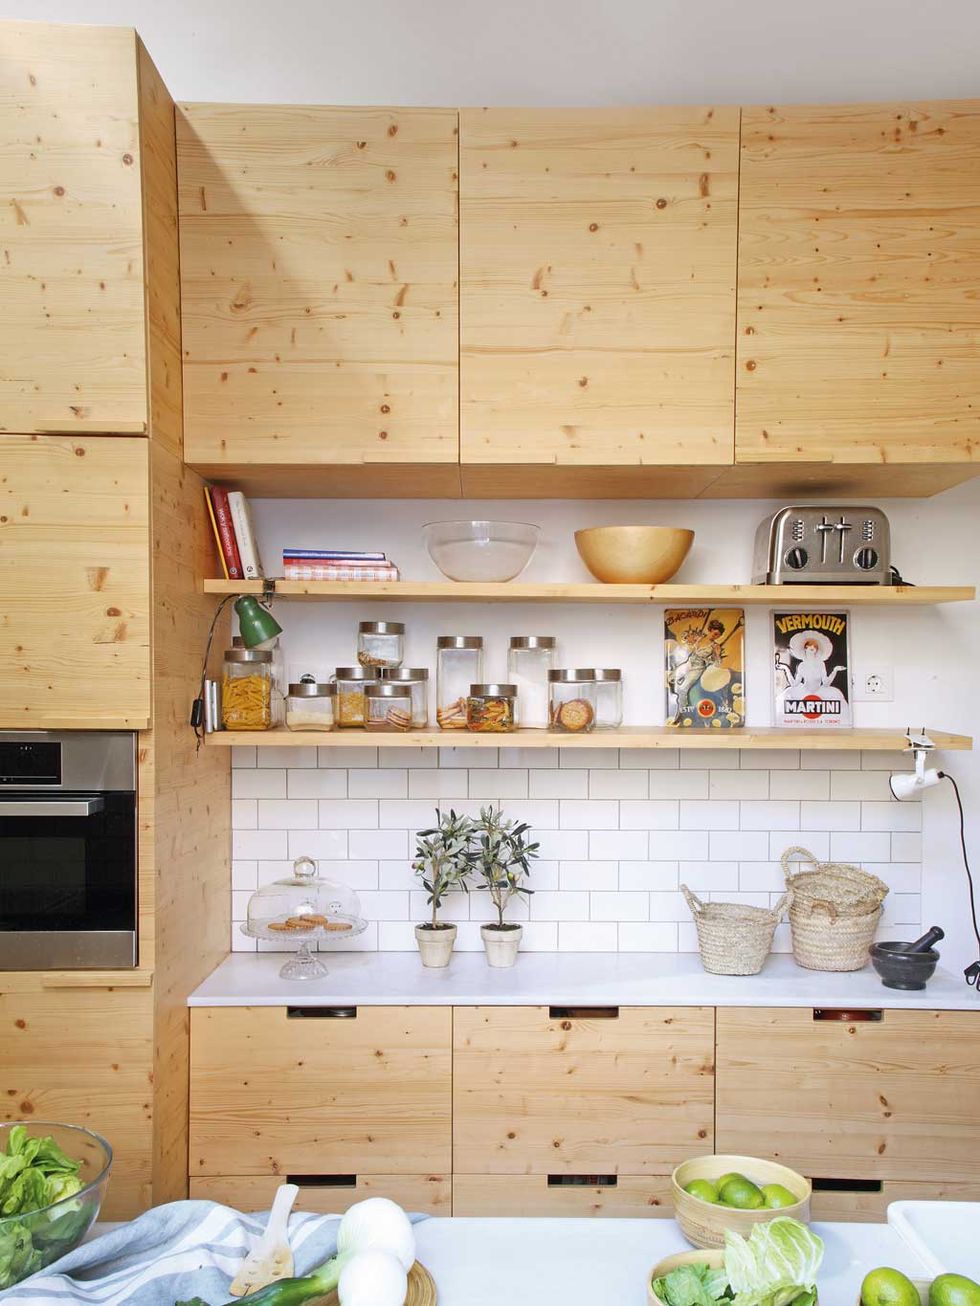 Cocinas pequeñas: 85 ideas para decorar y aprovechar espacios